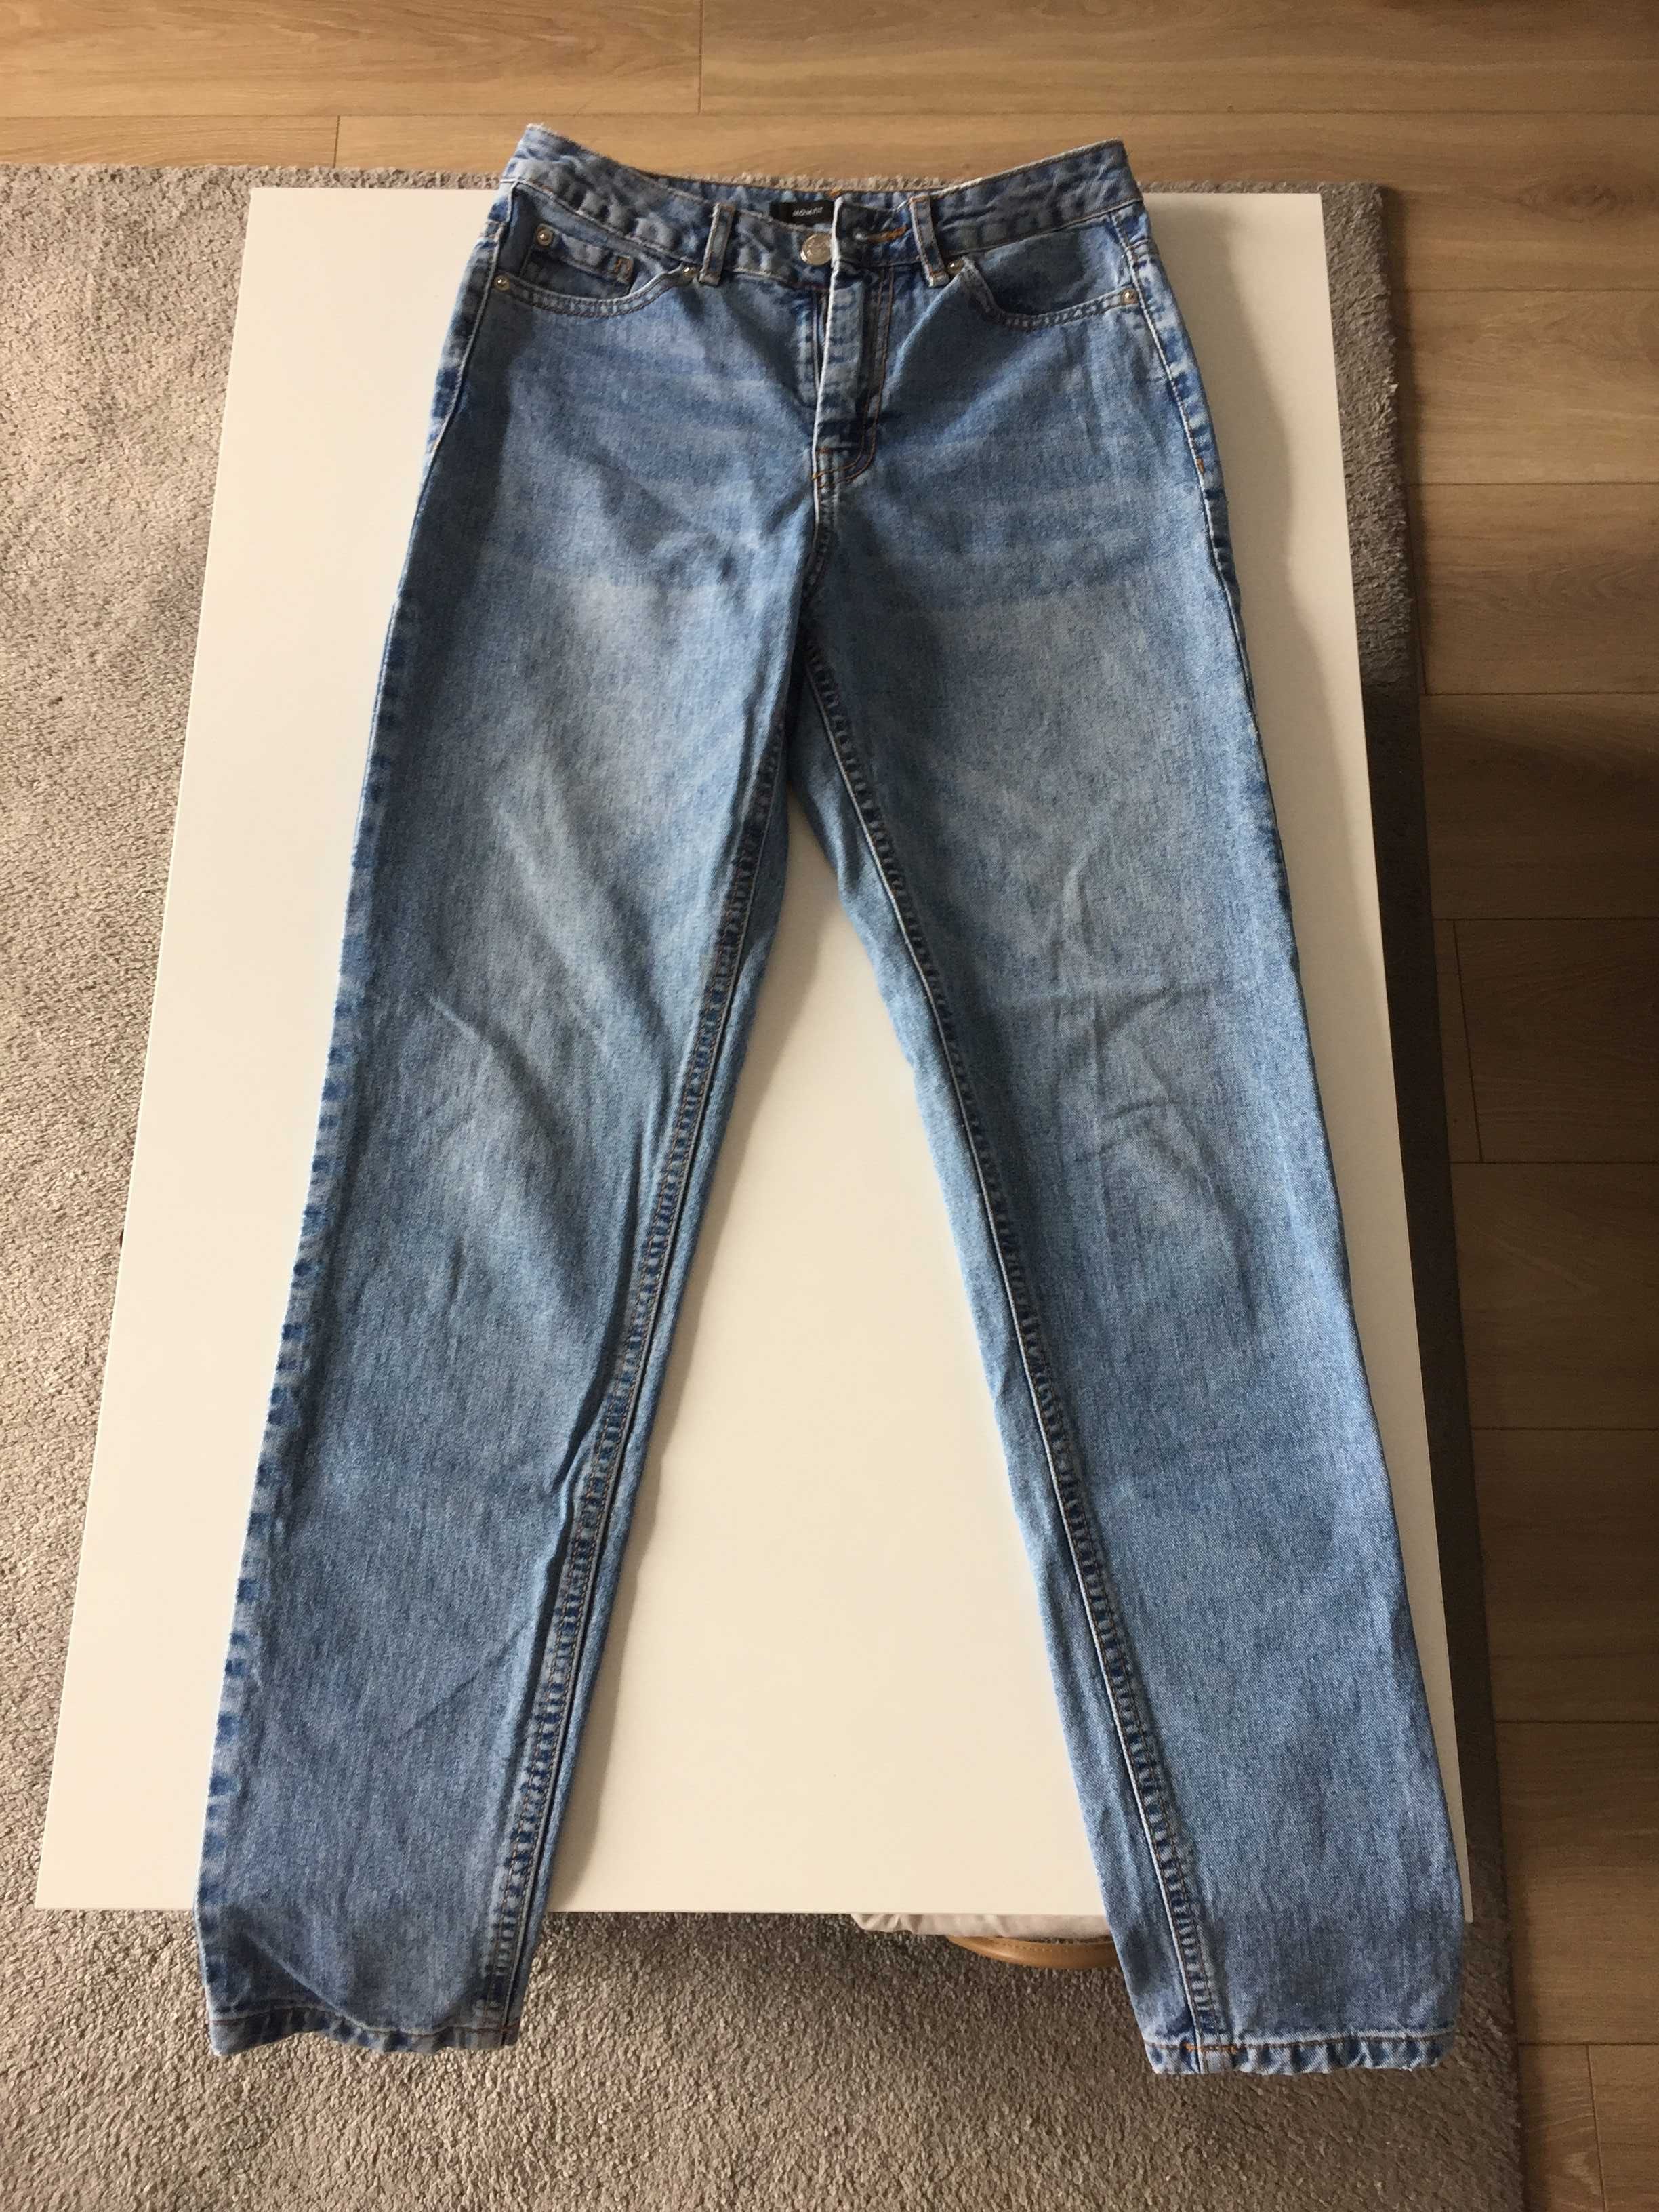 Spodnie jeansy damskie 'SINSAY' - rozm 34